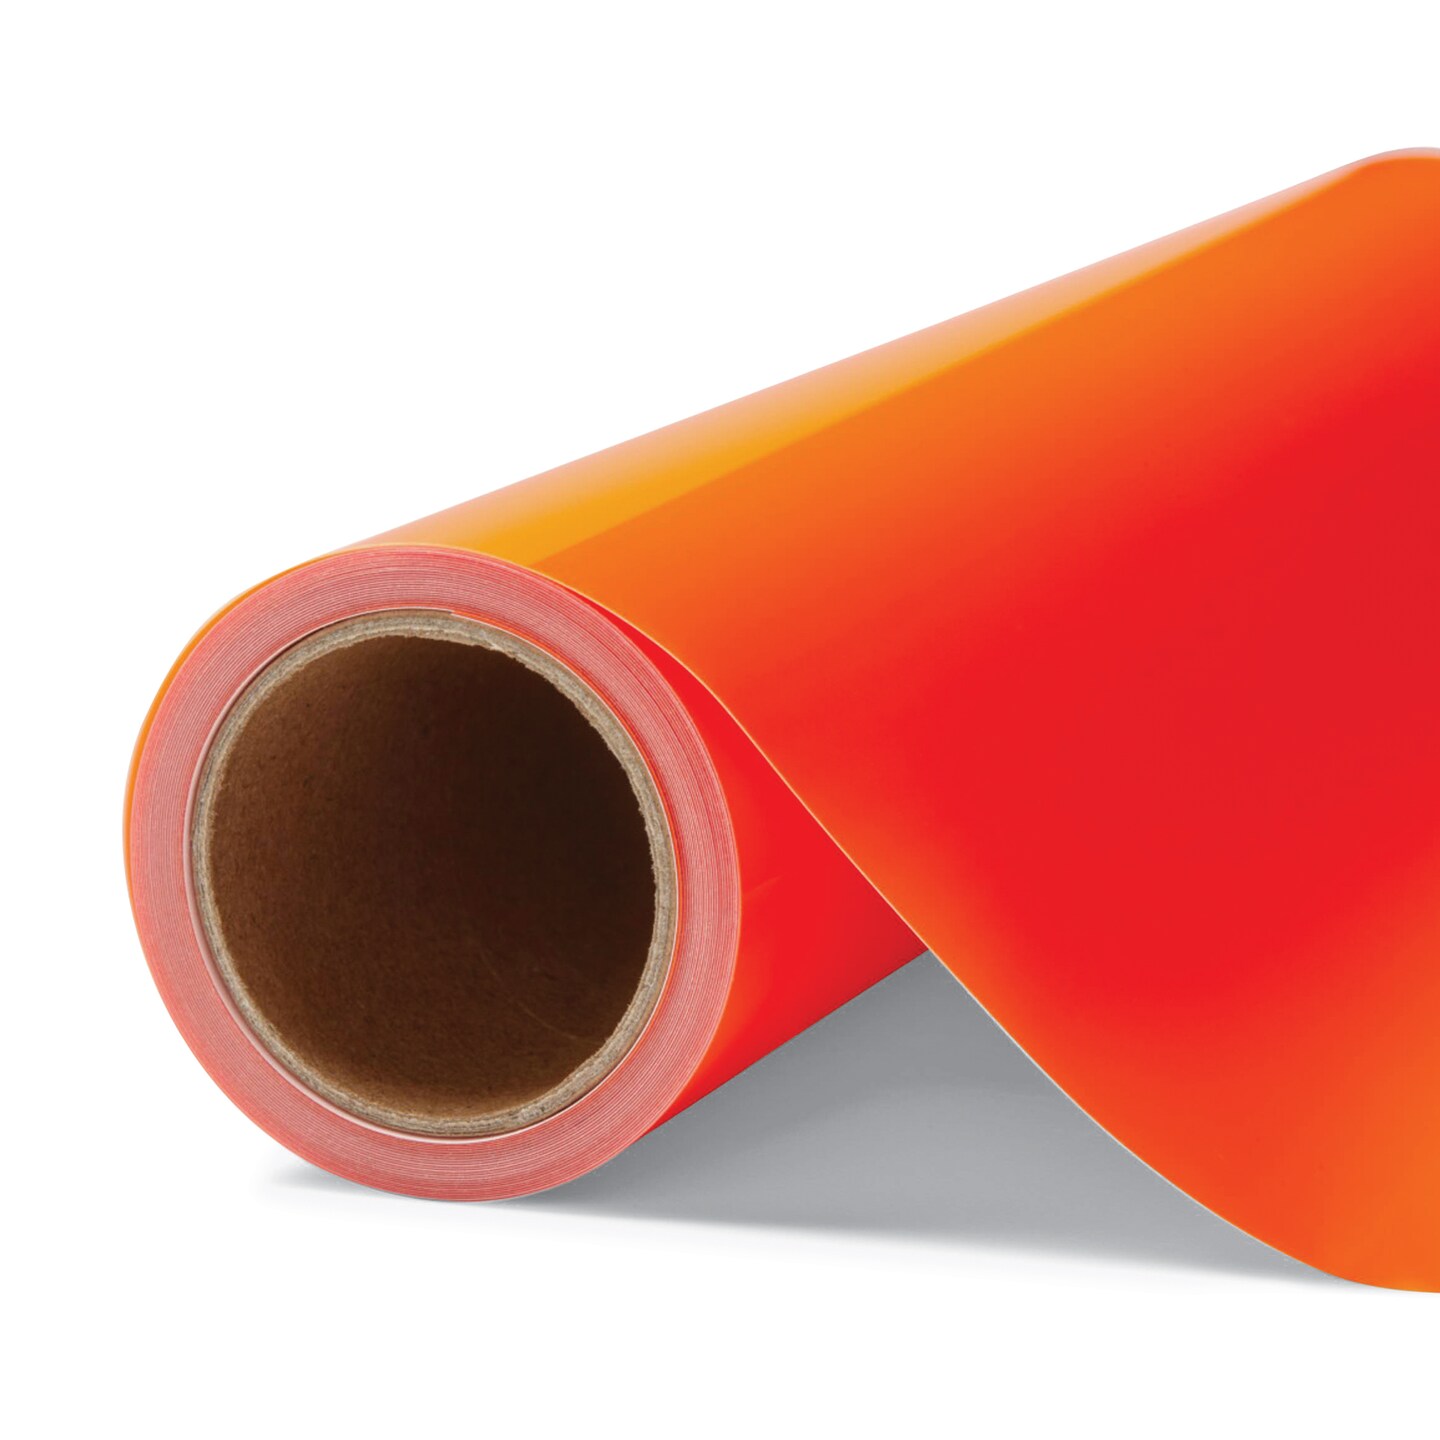 Cricut Iron-On Heat Transfer Vinyl - Neon Orange, 12 x 12 ft, Roll